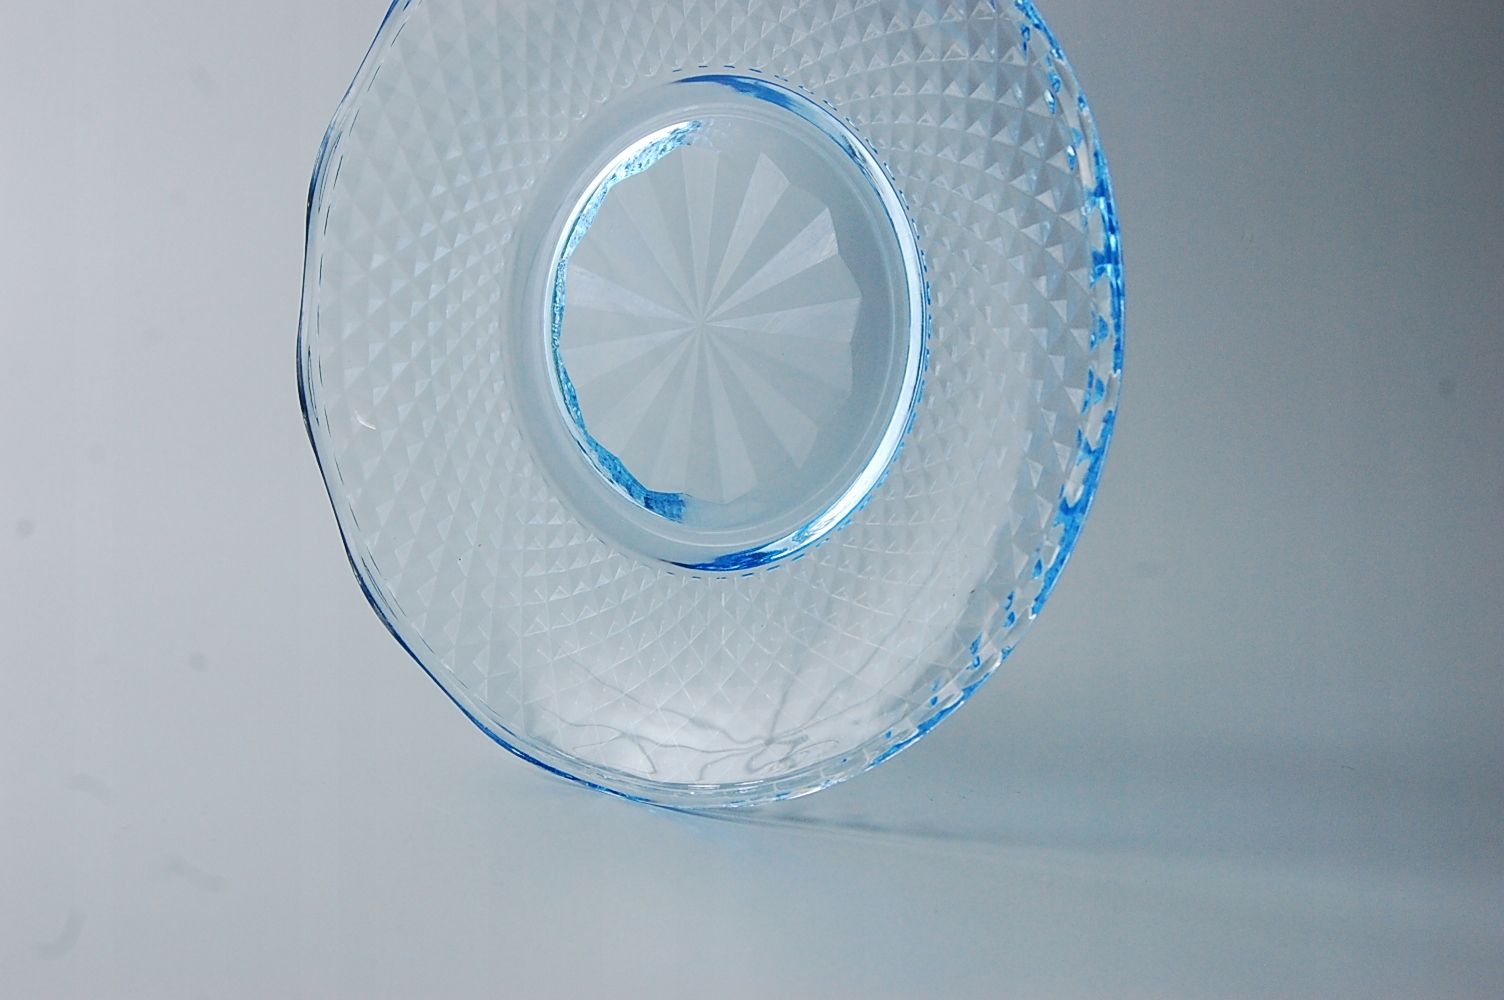 piękny niebieski włoski talerz szklany